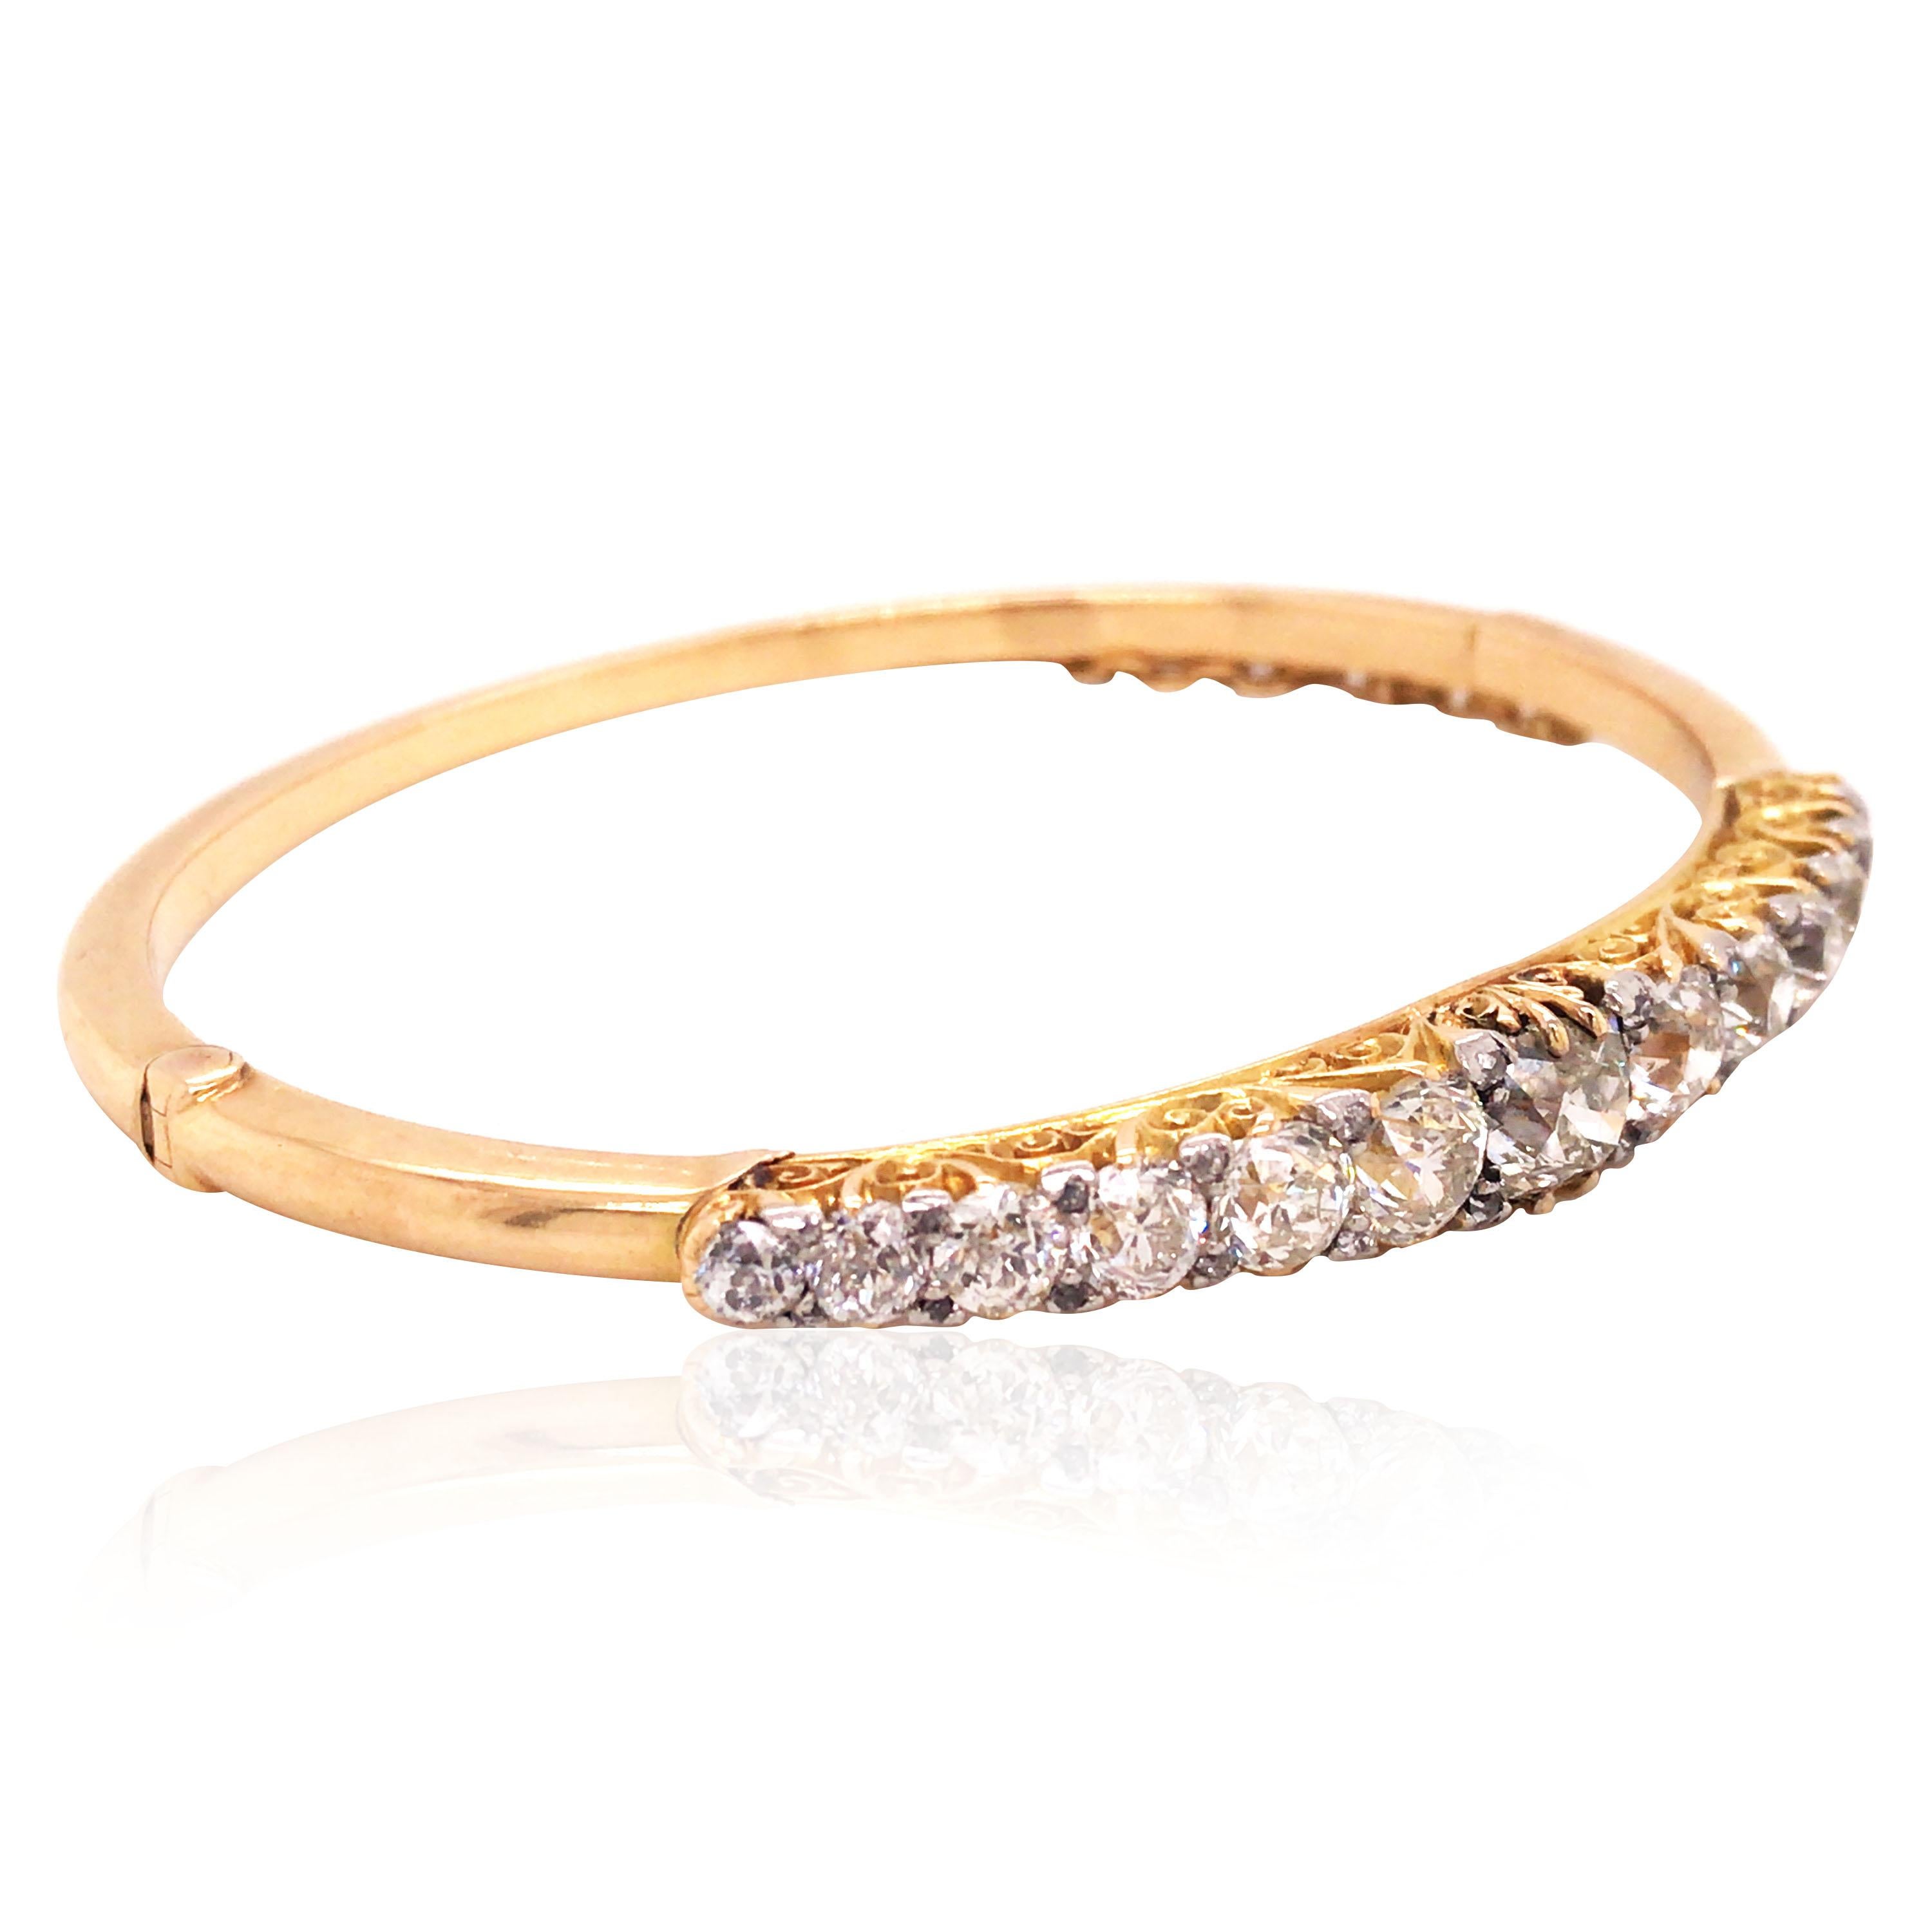 14k gold bangle bracelet with diamonds